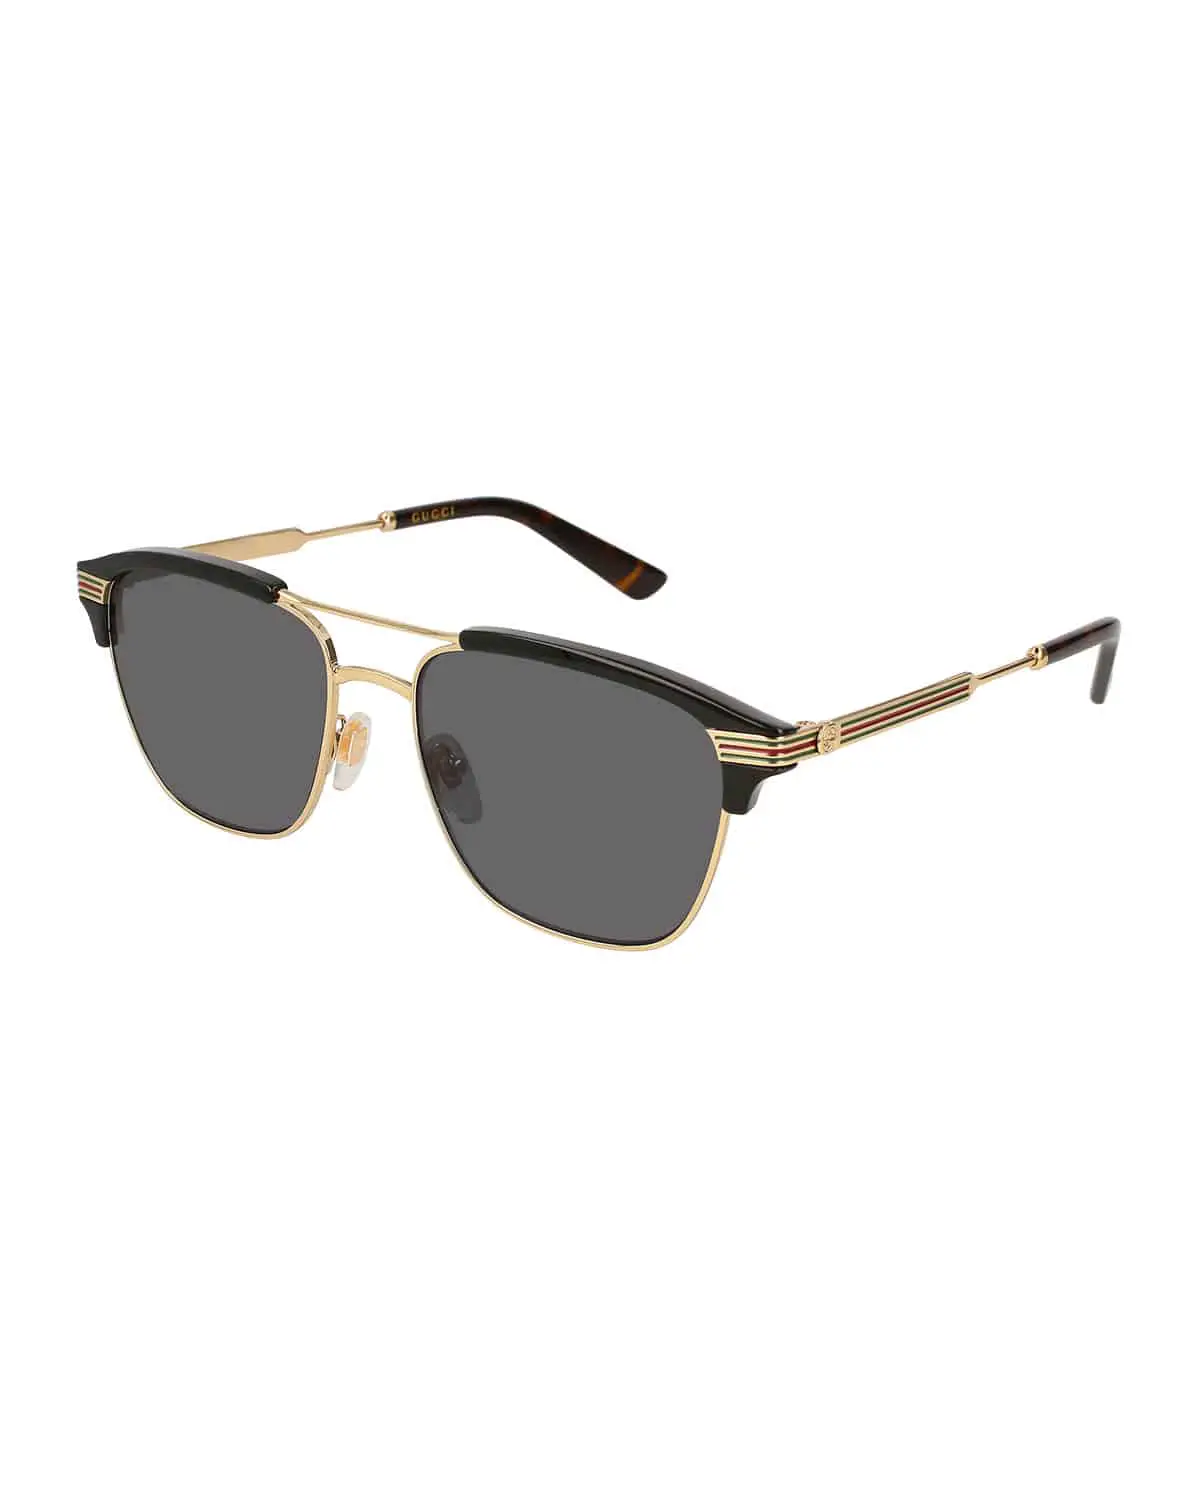 Gucci Retro Square Aviator Sunglasses, Gold/Black